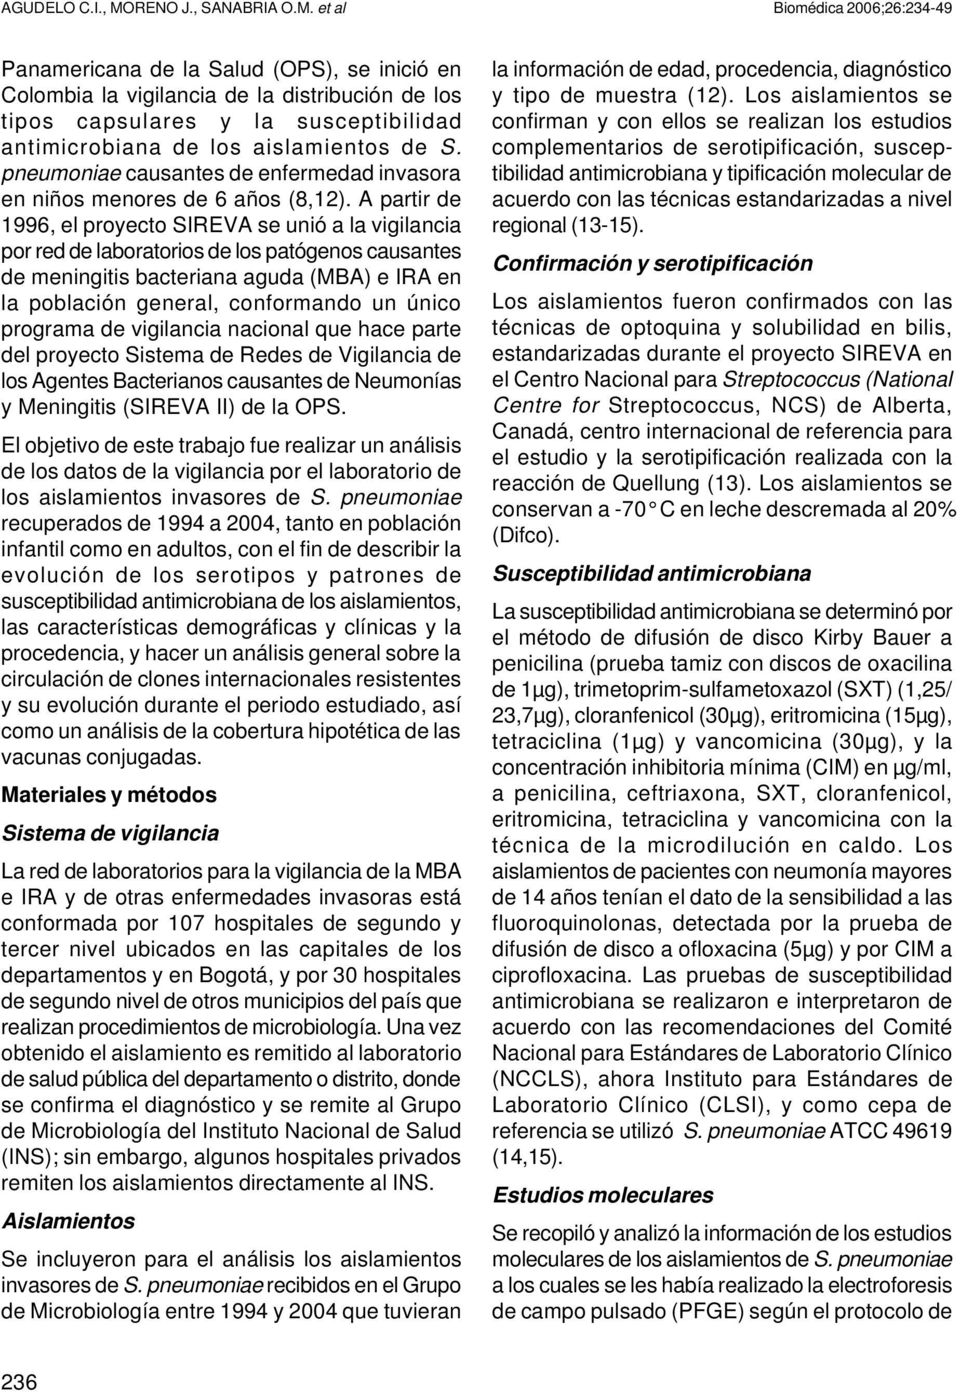 et al Biomédica 2006;26:234-49 Panamericana de la Salud (OPS), se inició en Colombia la vigilancia de la distribución de los tipos capsulares y la susceptibilidad antimicrobiana de los aislamientos